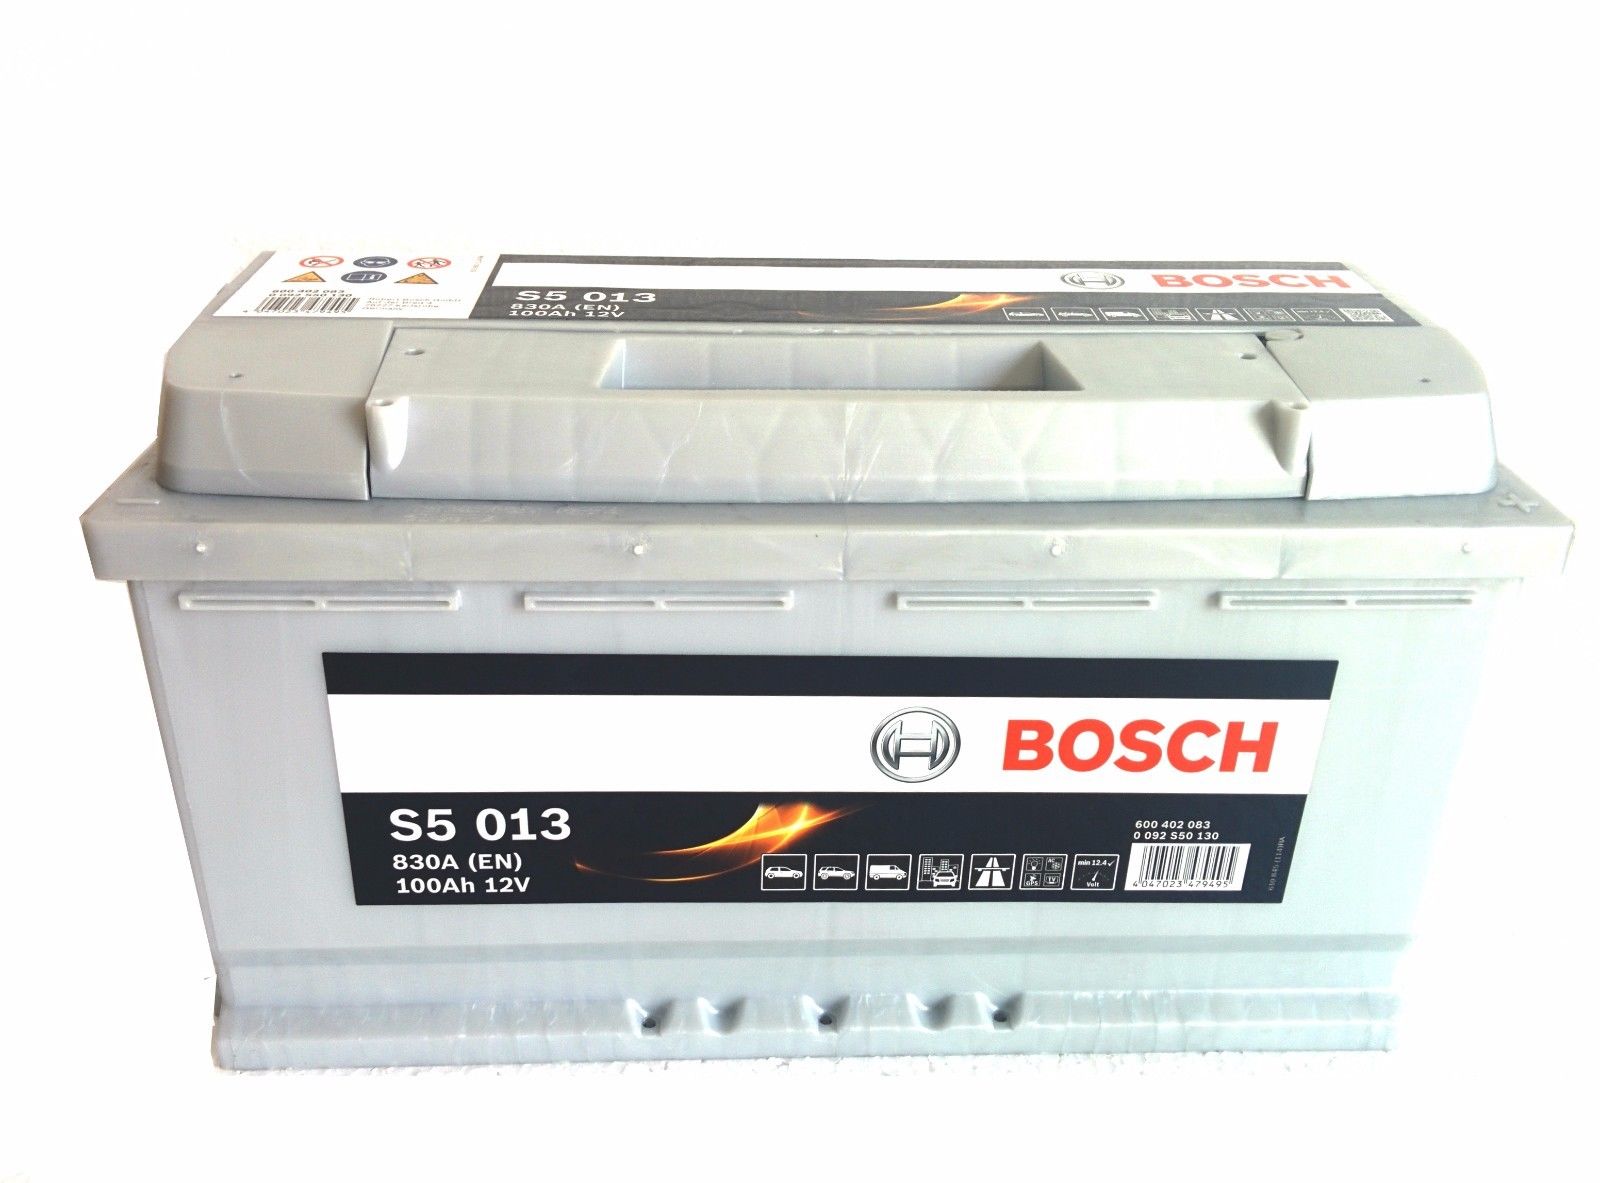 0 092 S50 130 BOSCH S5 S5 013 Batterie 12V 100Ah 830A B13 L5  Bleiakkumulator S5 013, 12V 100AH 830A ❱❱❱ Preis und Erfahrungen